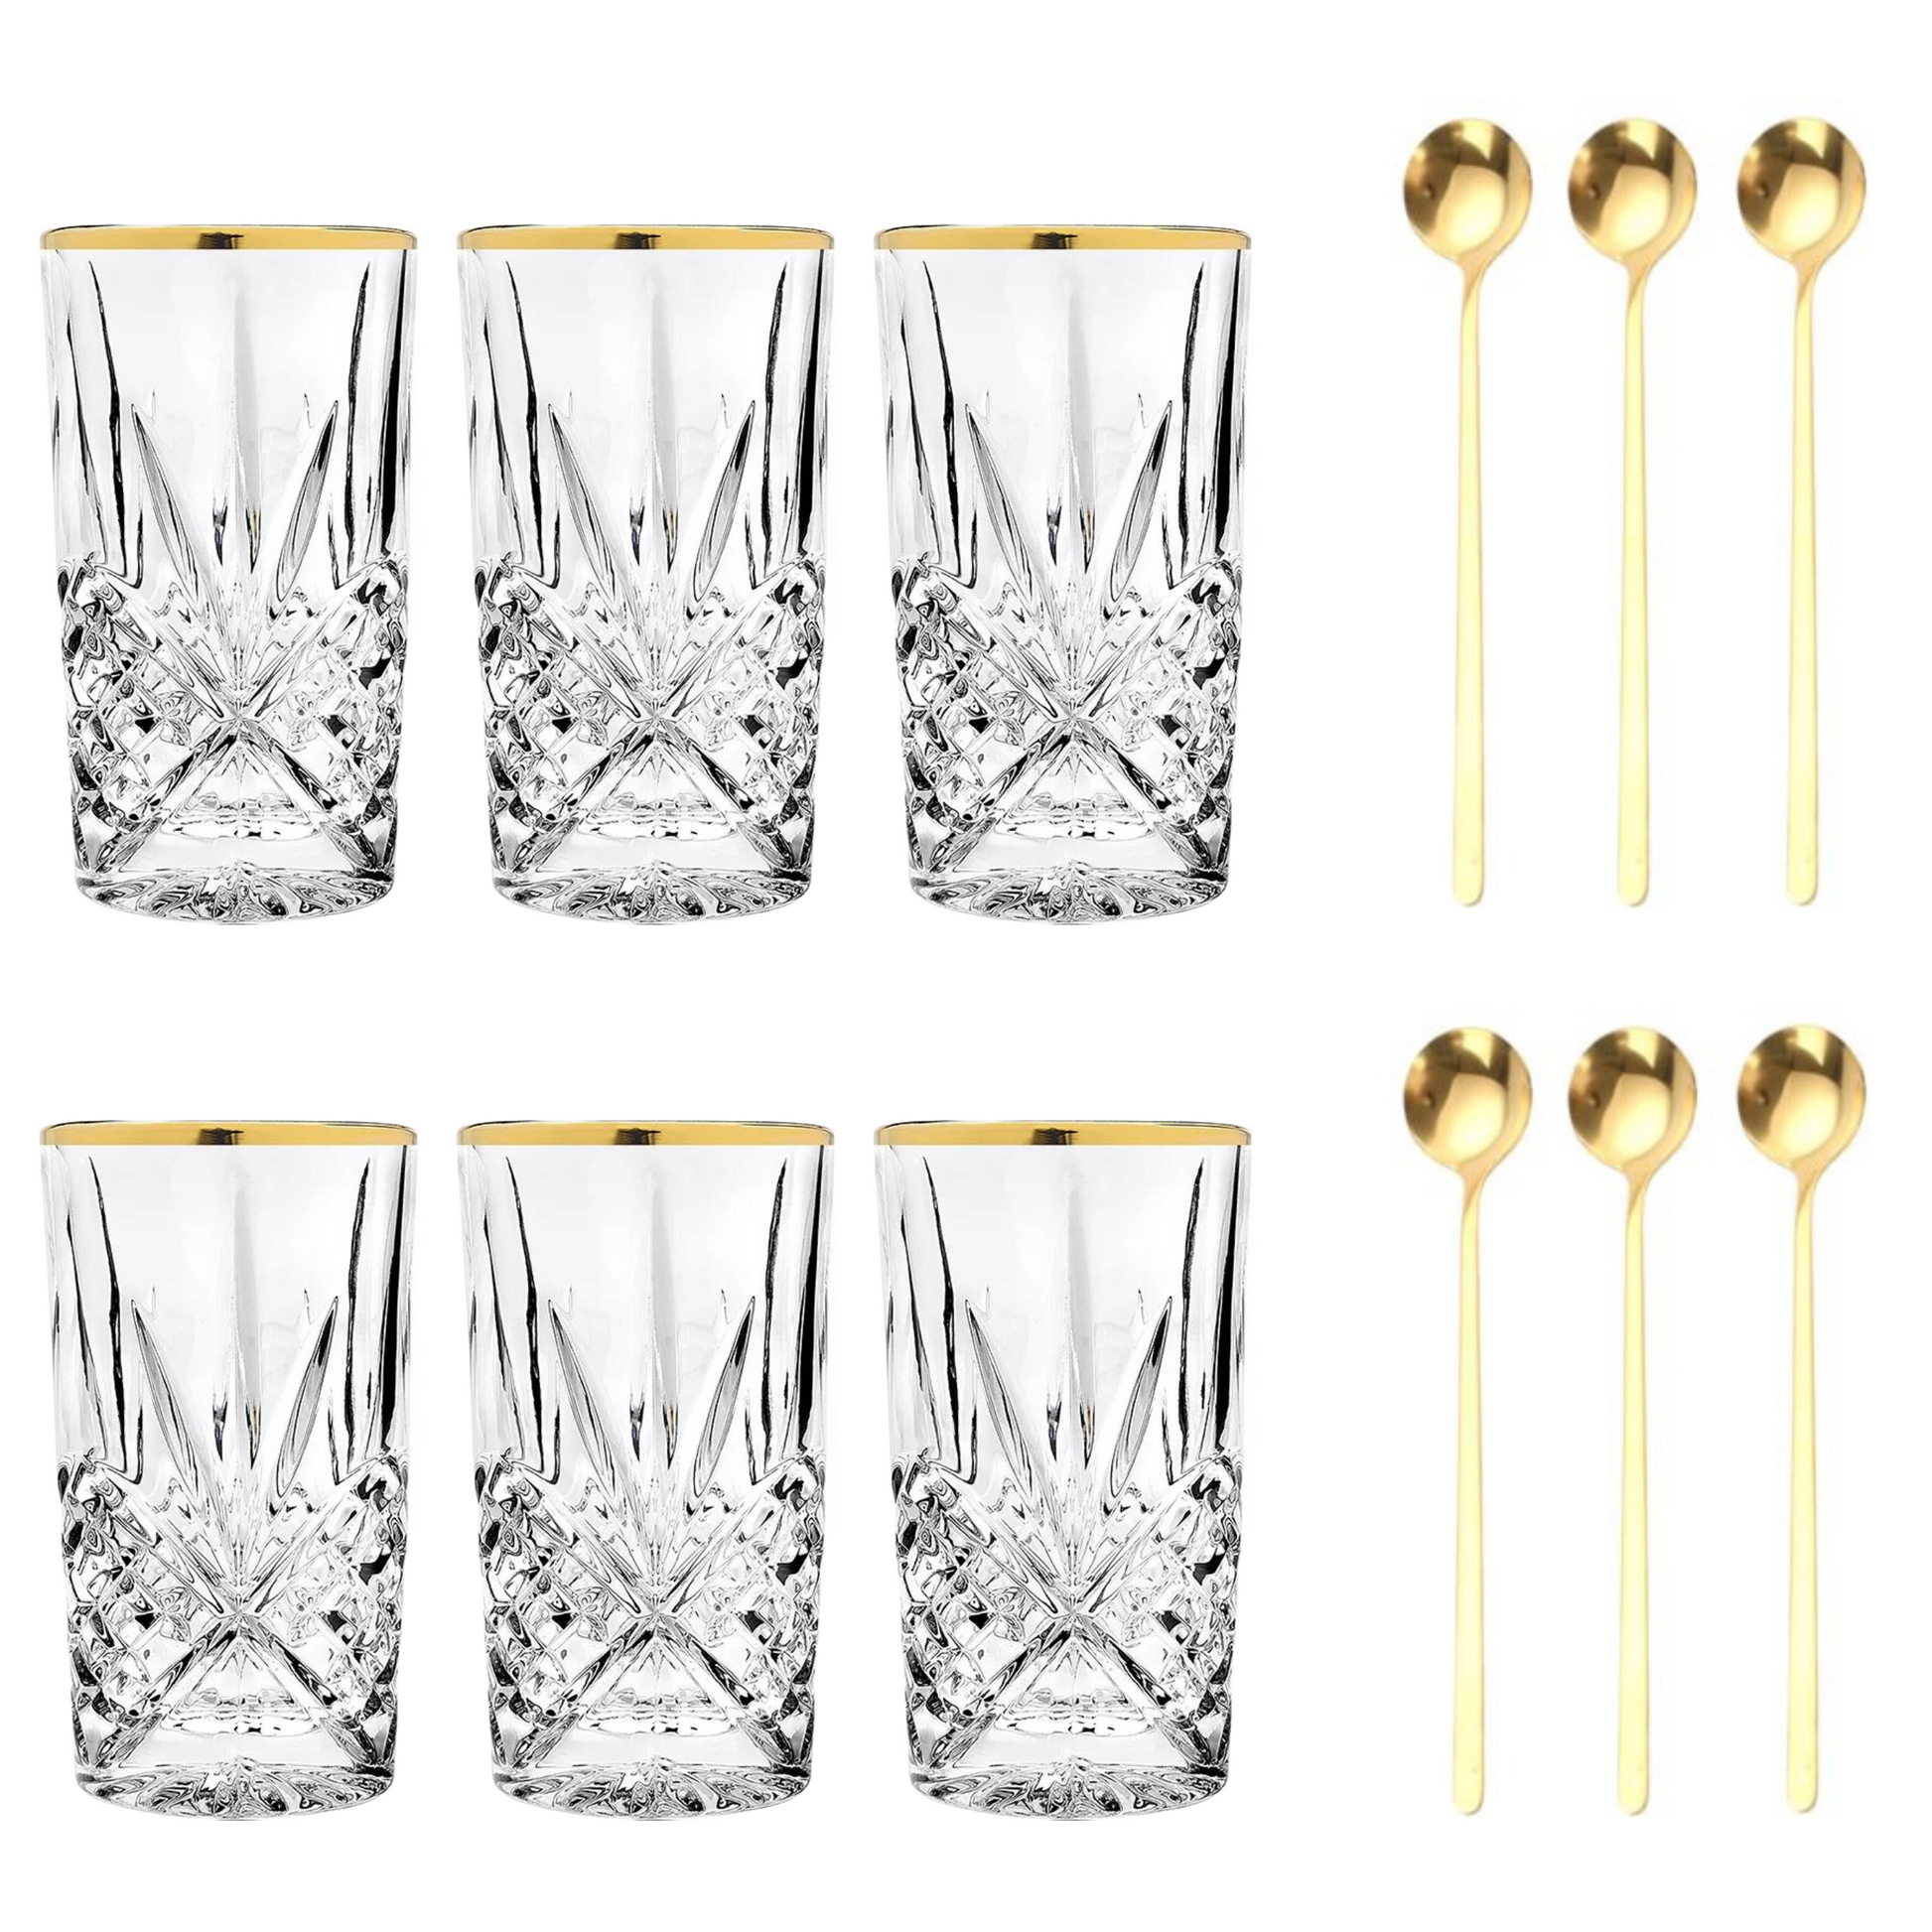 Set Luxus Kristall Latte Macchiato Gläser mit Goldrand 350ml Trinkgläser 6er Set "Star" mit goldenen Latte Macchiato Löffeln